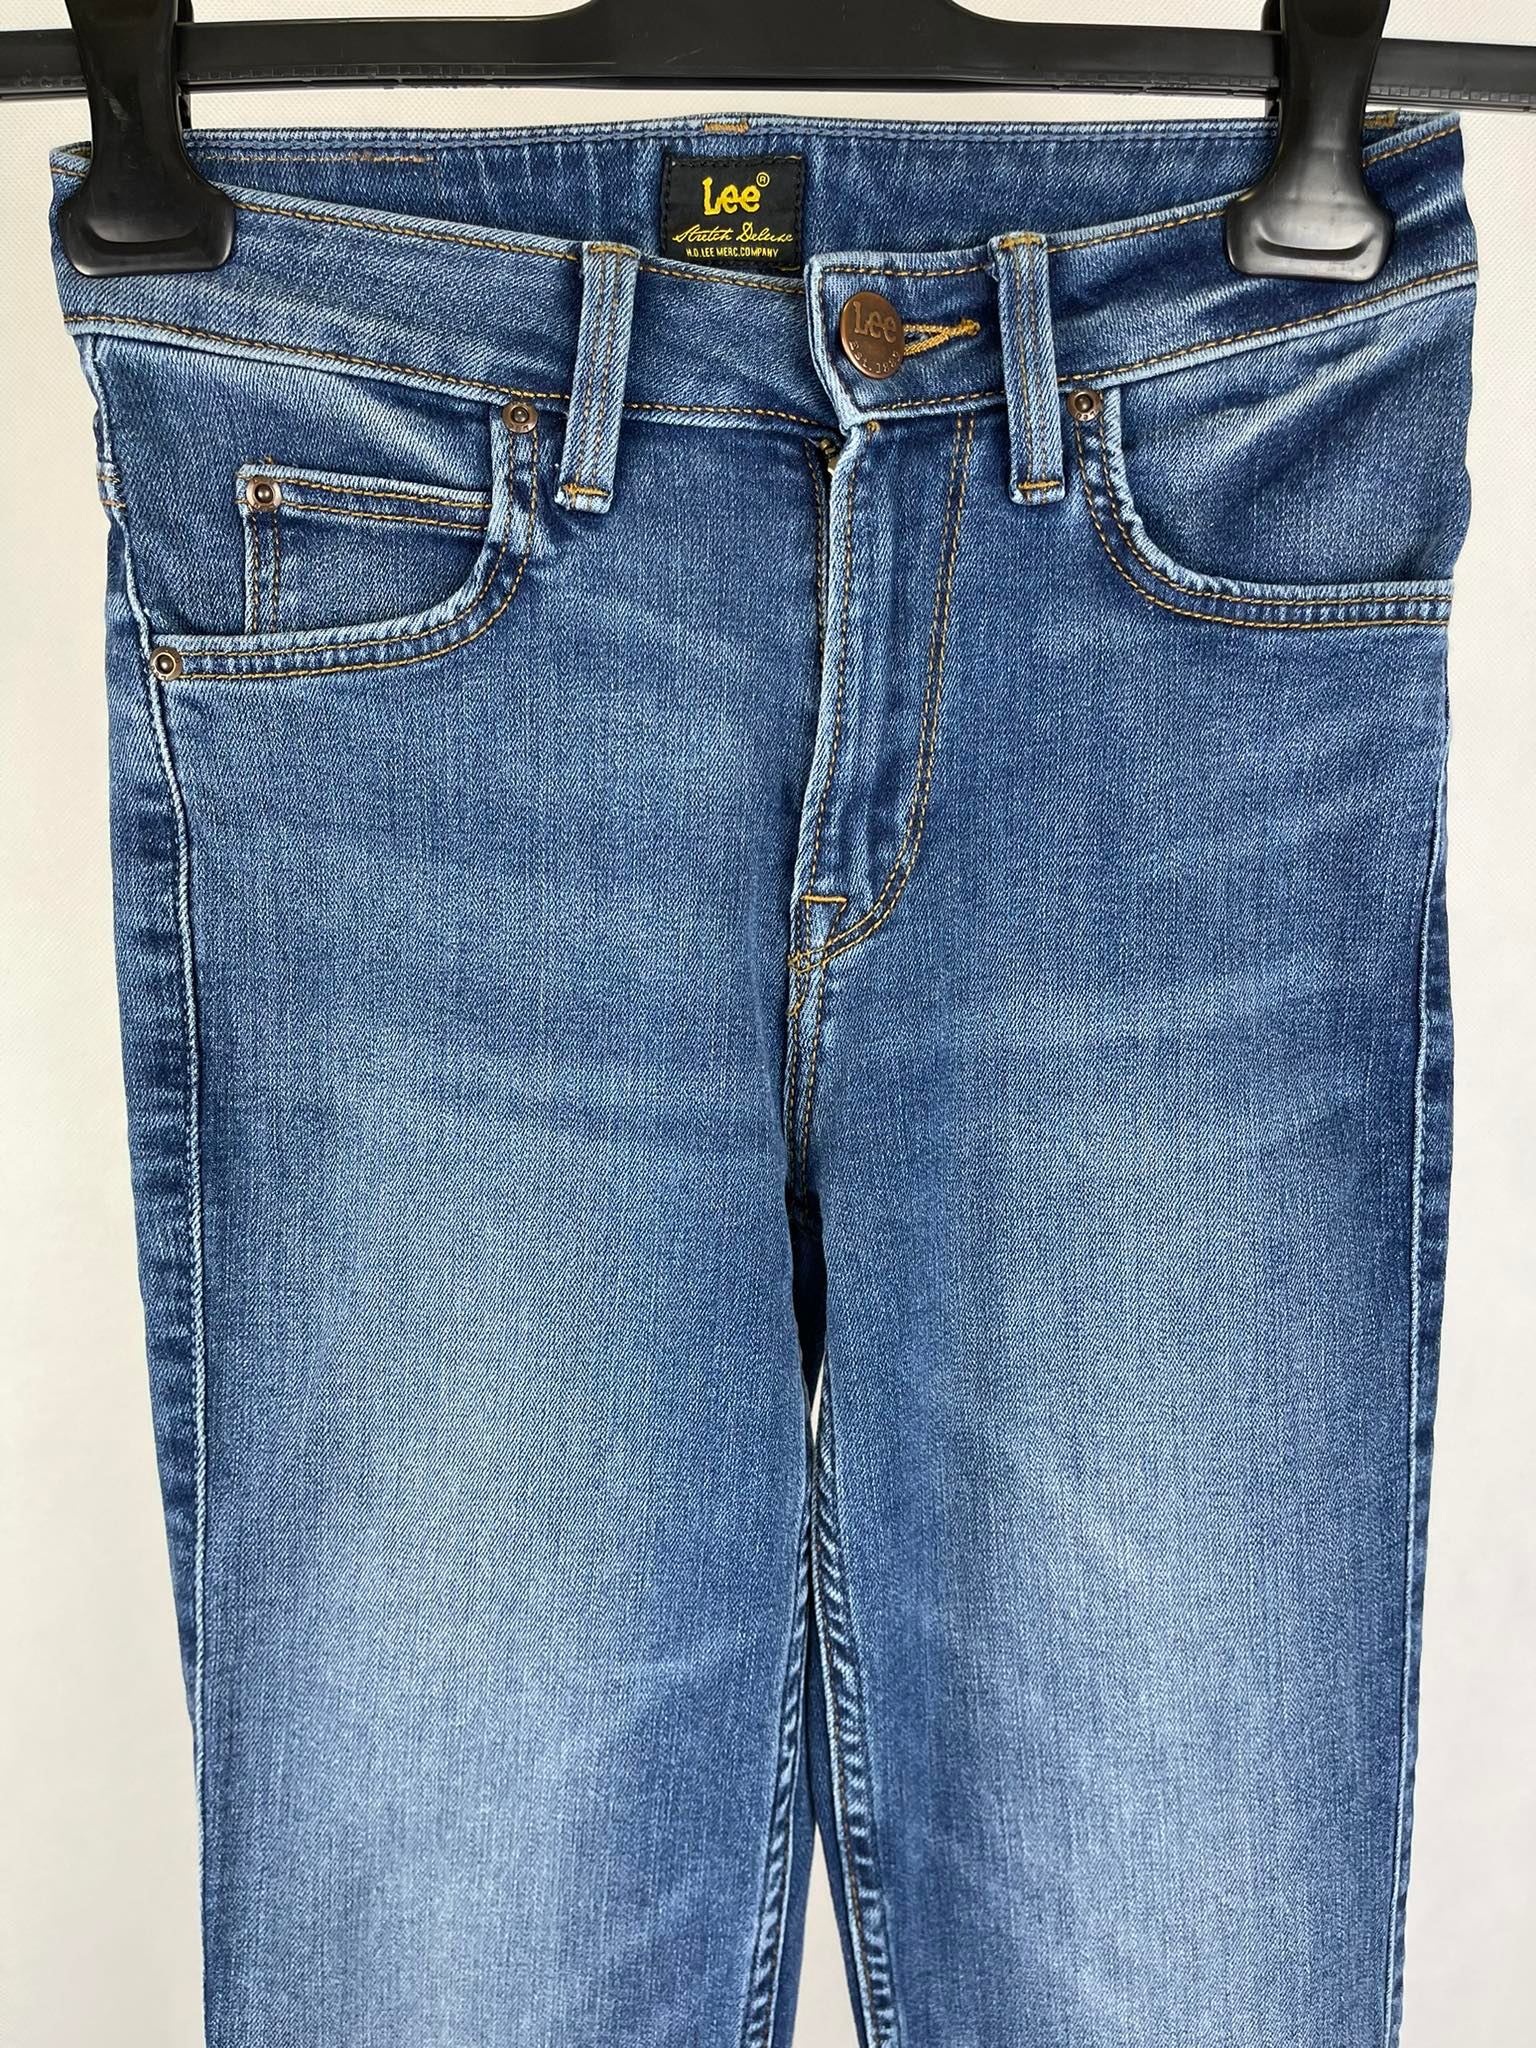 Spodnie damskie jeansowe Lee - Fitting Room